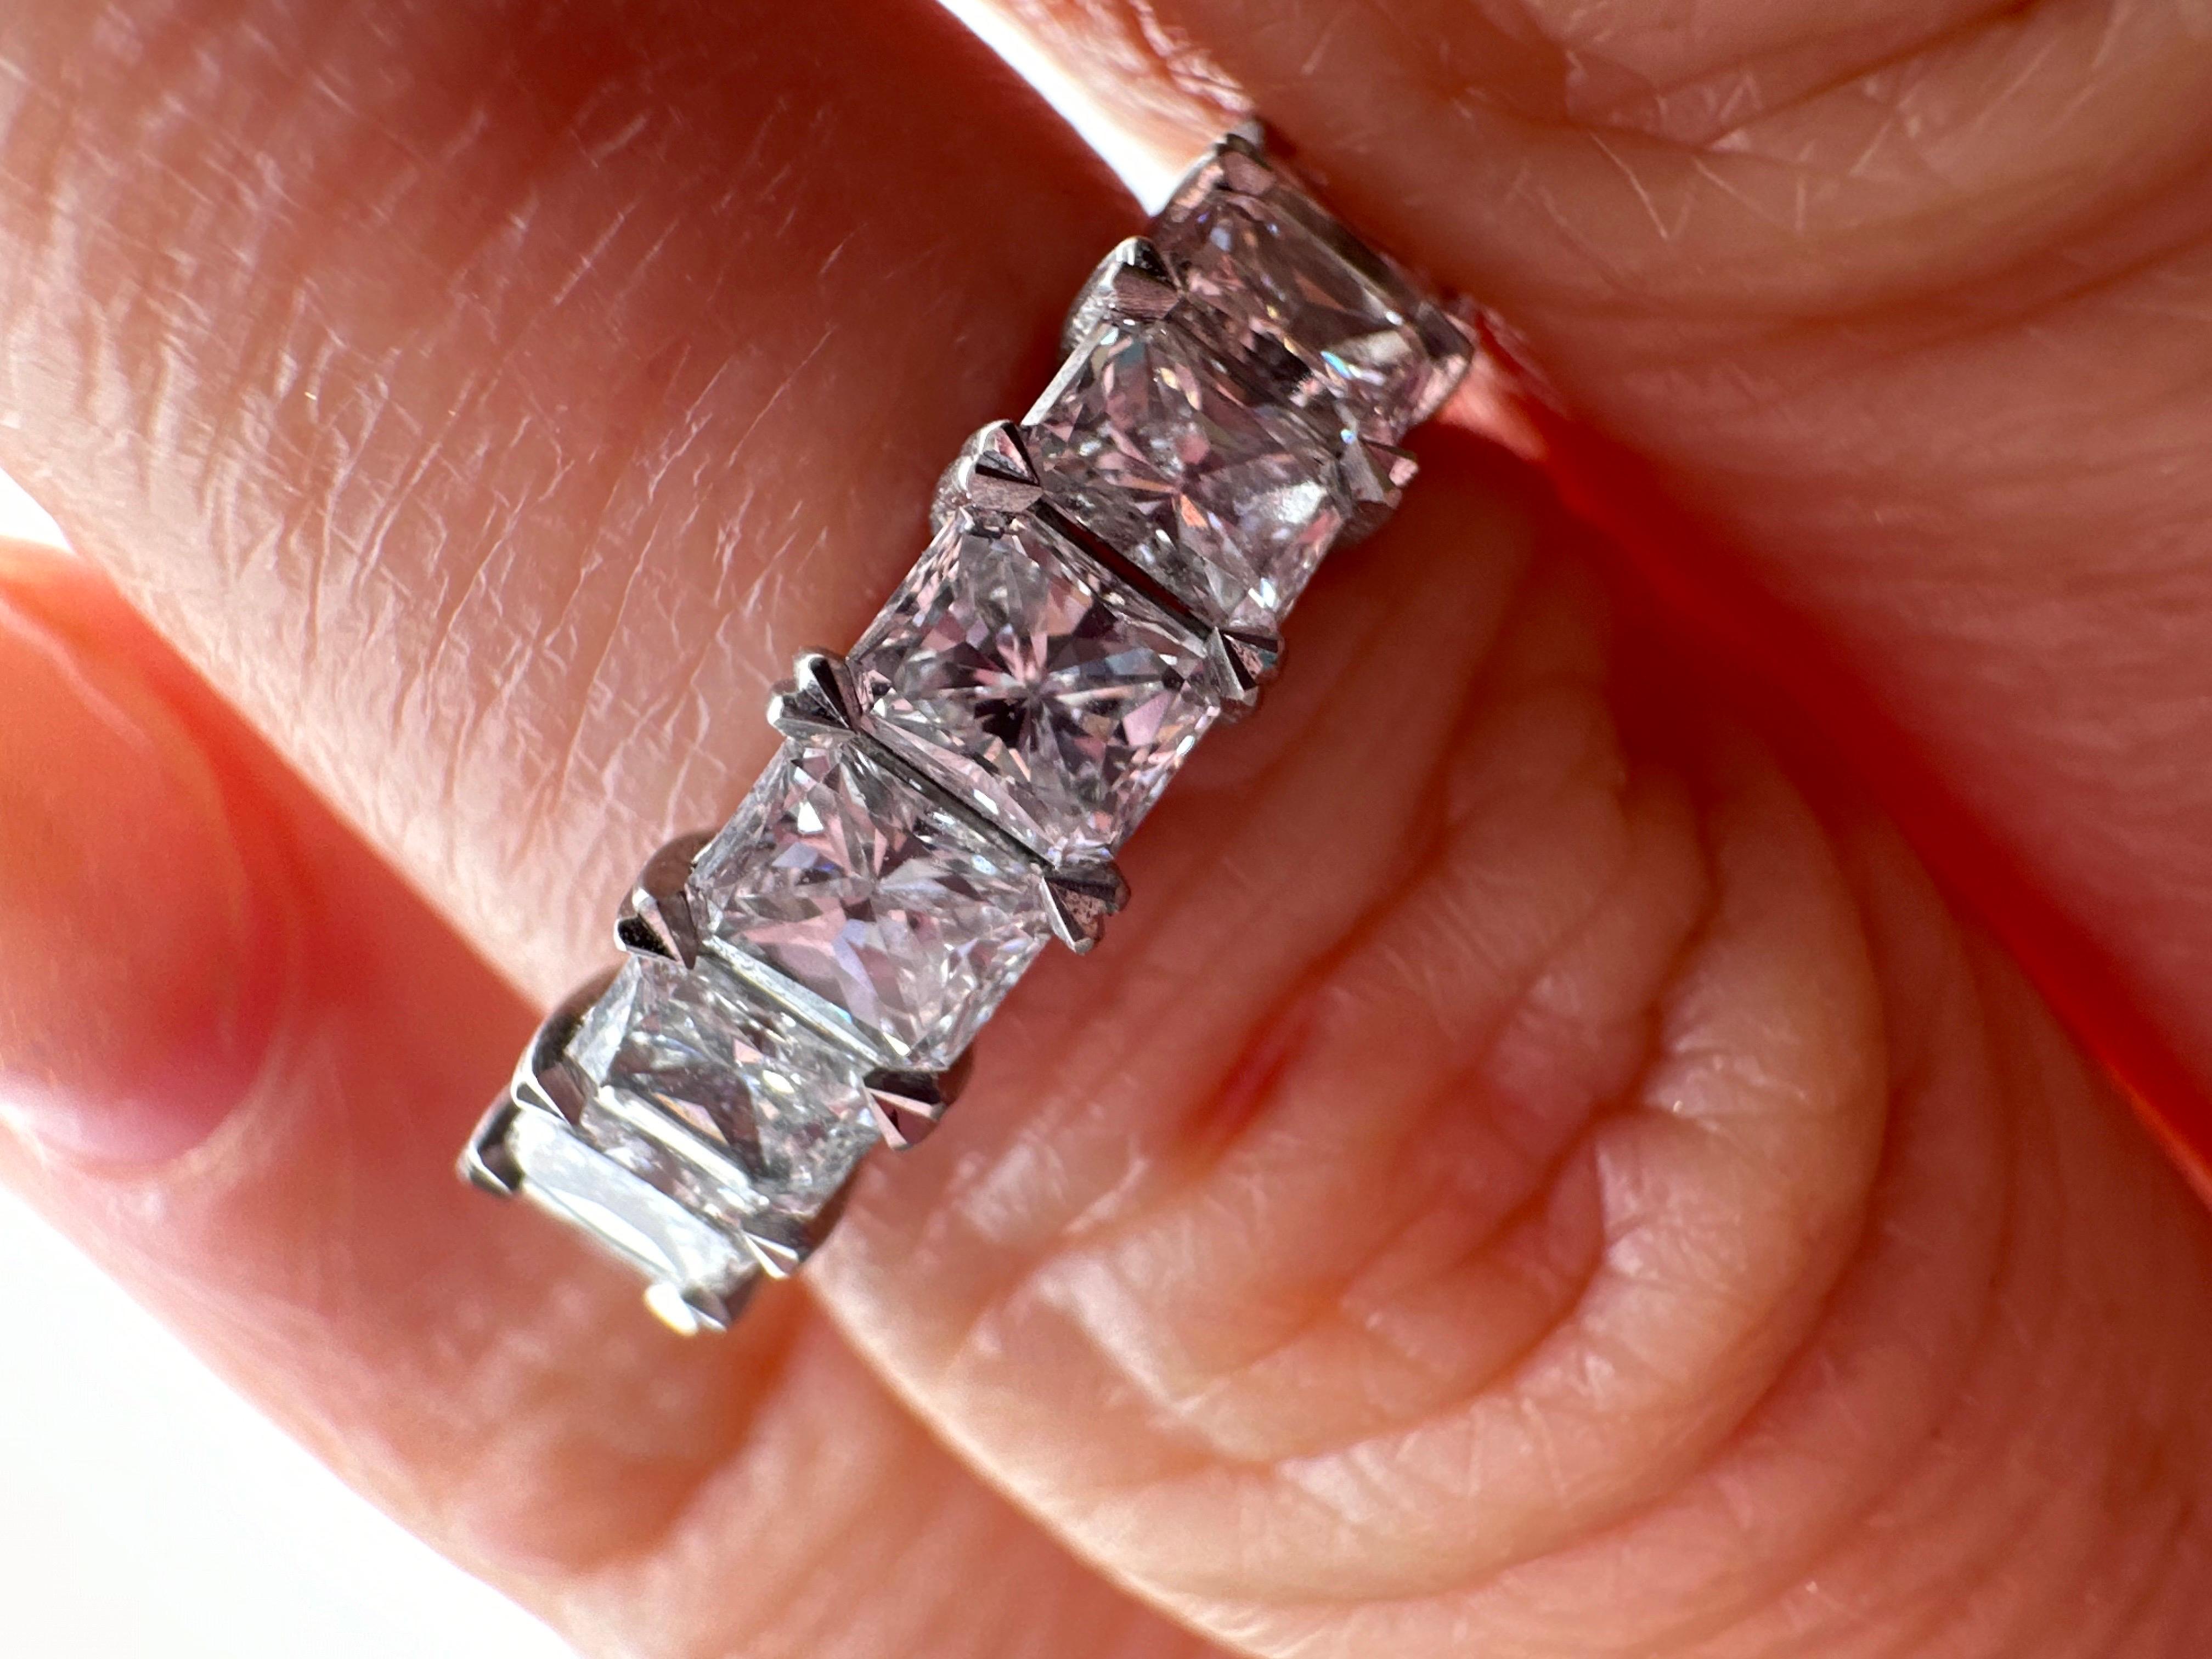 Einzigartiger Diamantring mit kleinen Herzen zwischen den einzelnen Steinen als Design, mit passenden Diamanten im ganzen Ring! Hergestellt aus 18kt Weißgold!

Metall Typ: 18KT

Natürliche(r) Diamant(en): 
Farbe: F-G
Schliff:Runder Brillant
Karat: